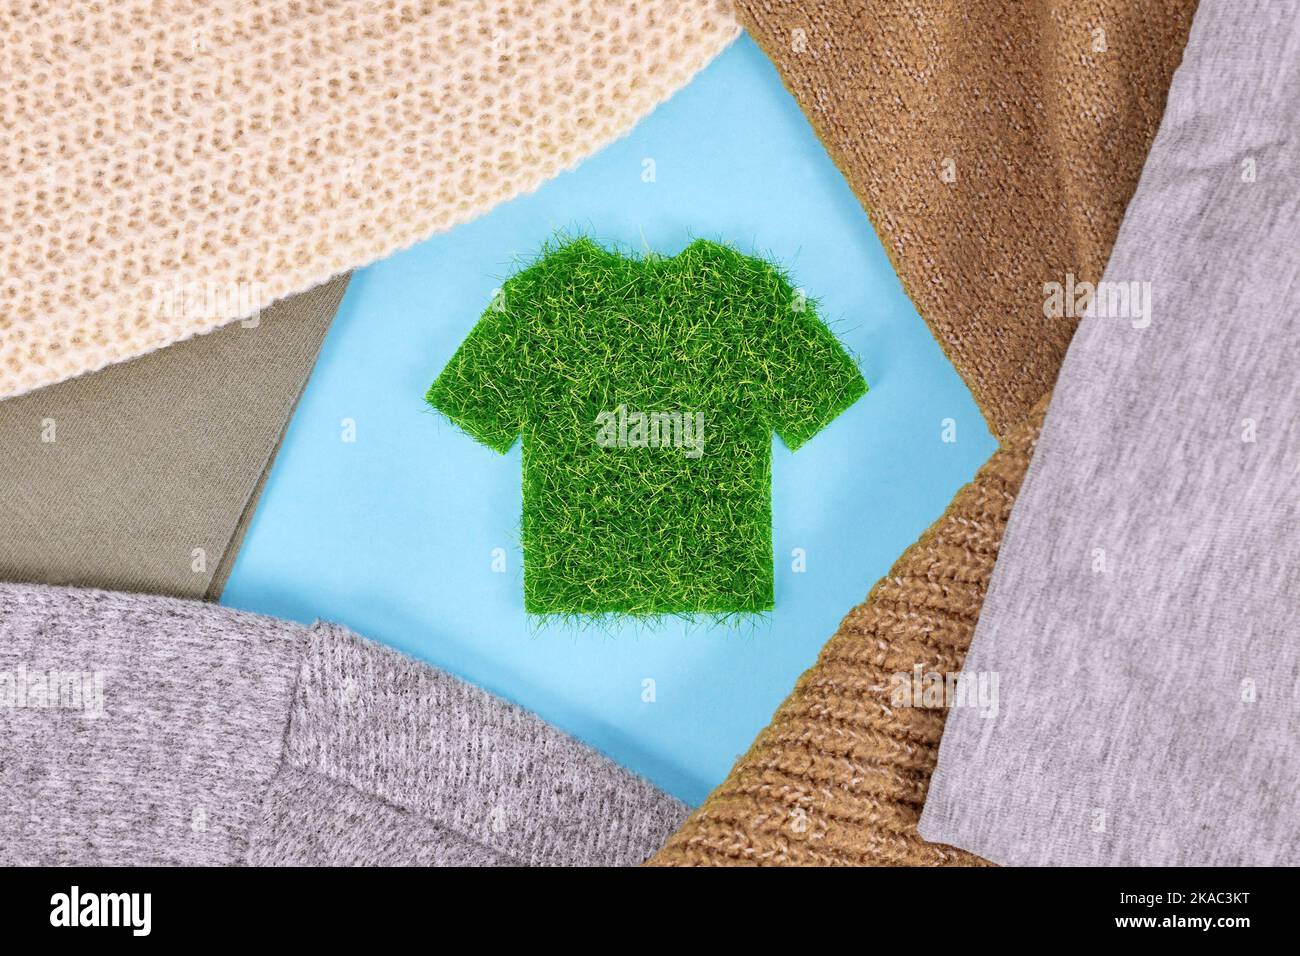 Konzept für umweltfreundlich produzierte Kleidung mit Hemd aus Gras, umgeben von Pullovern Stockfoto